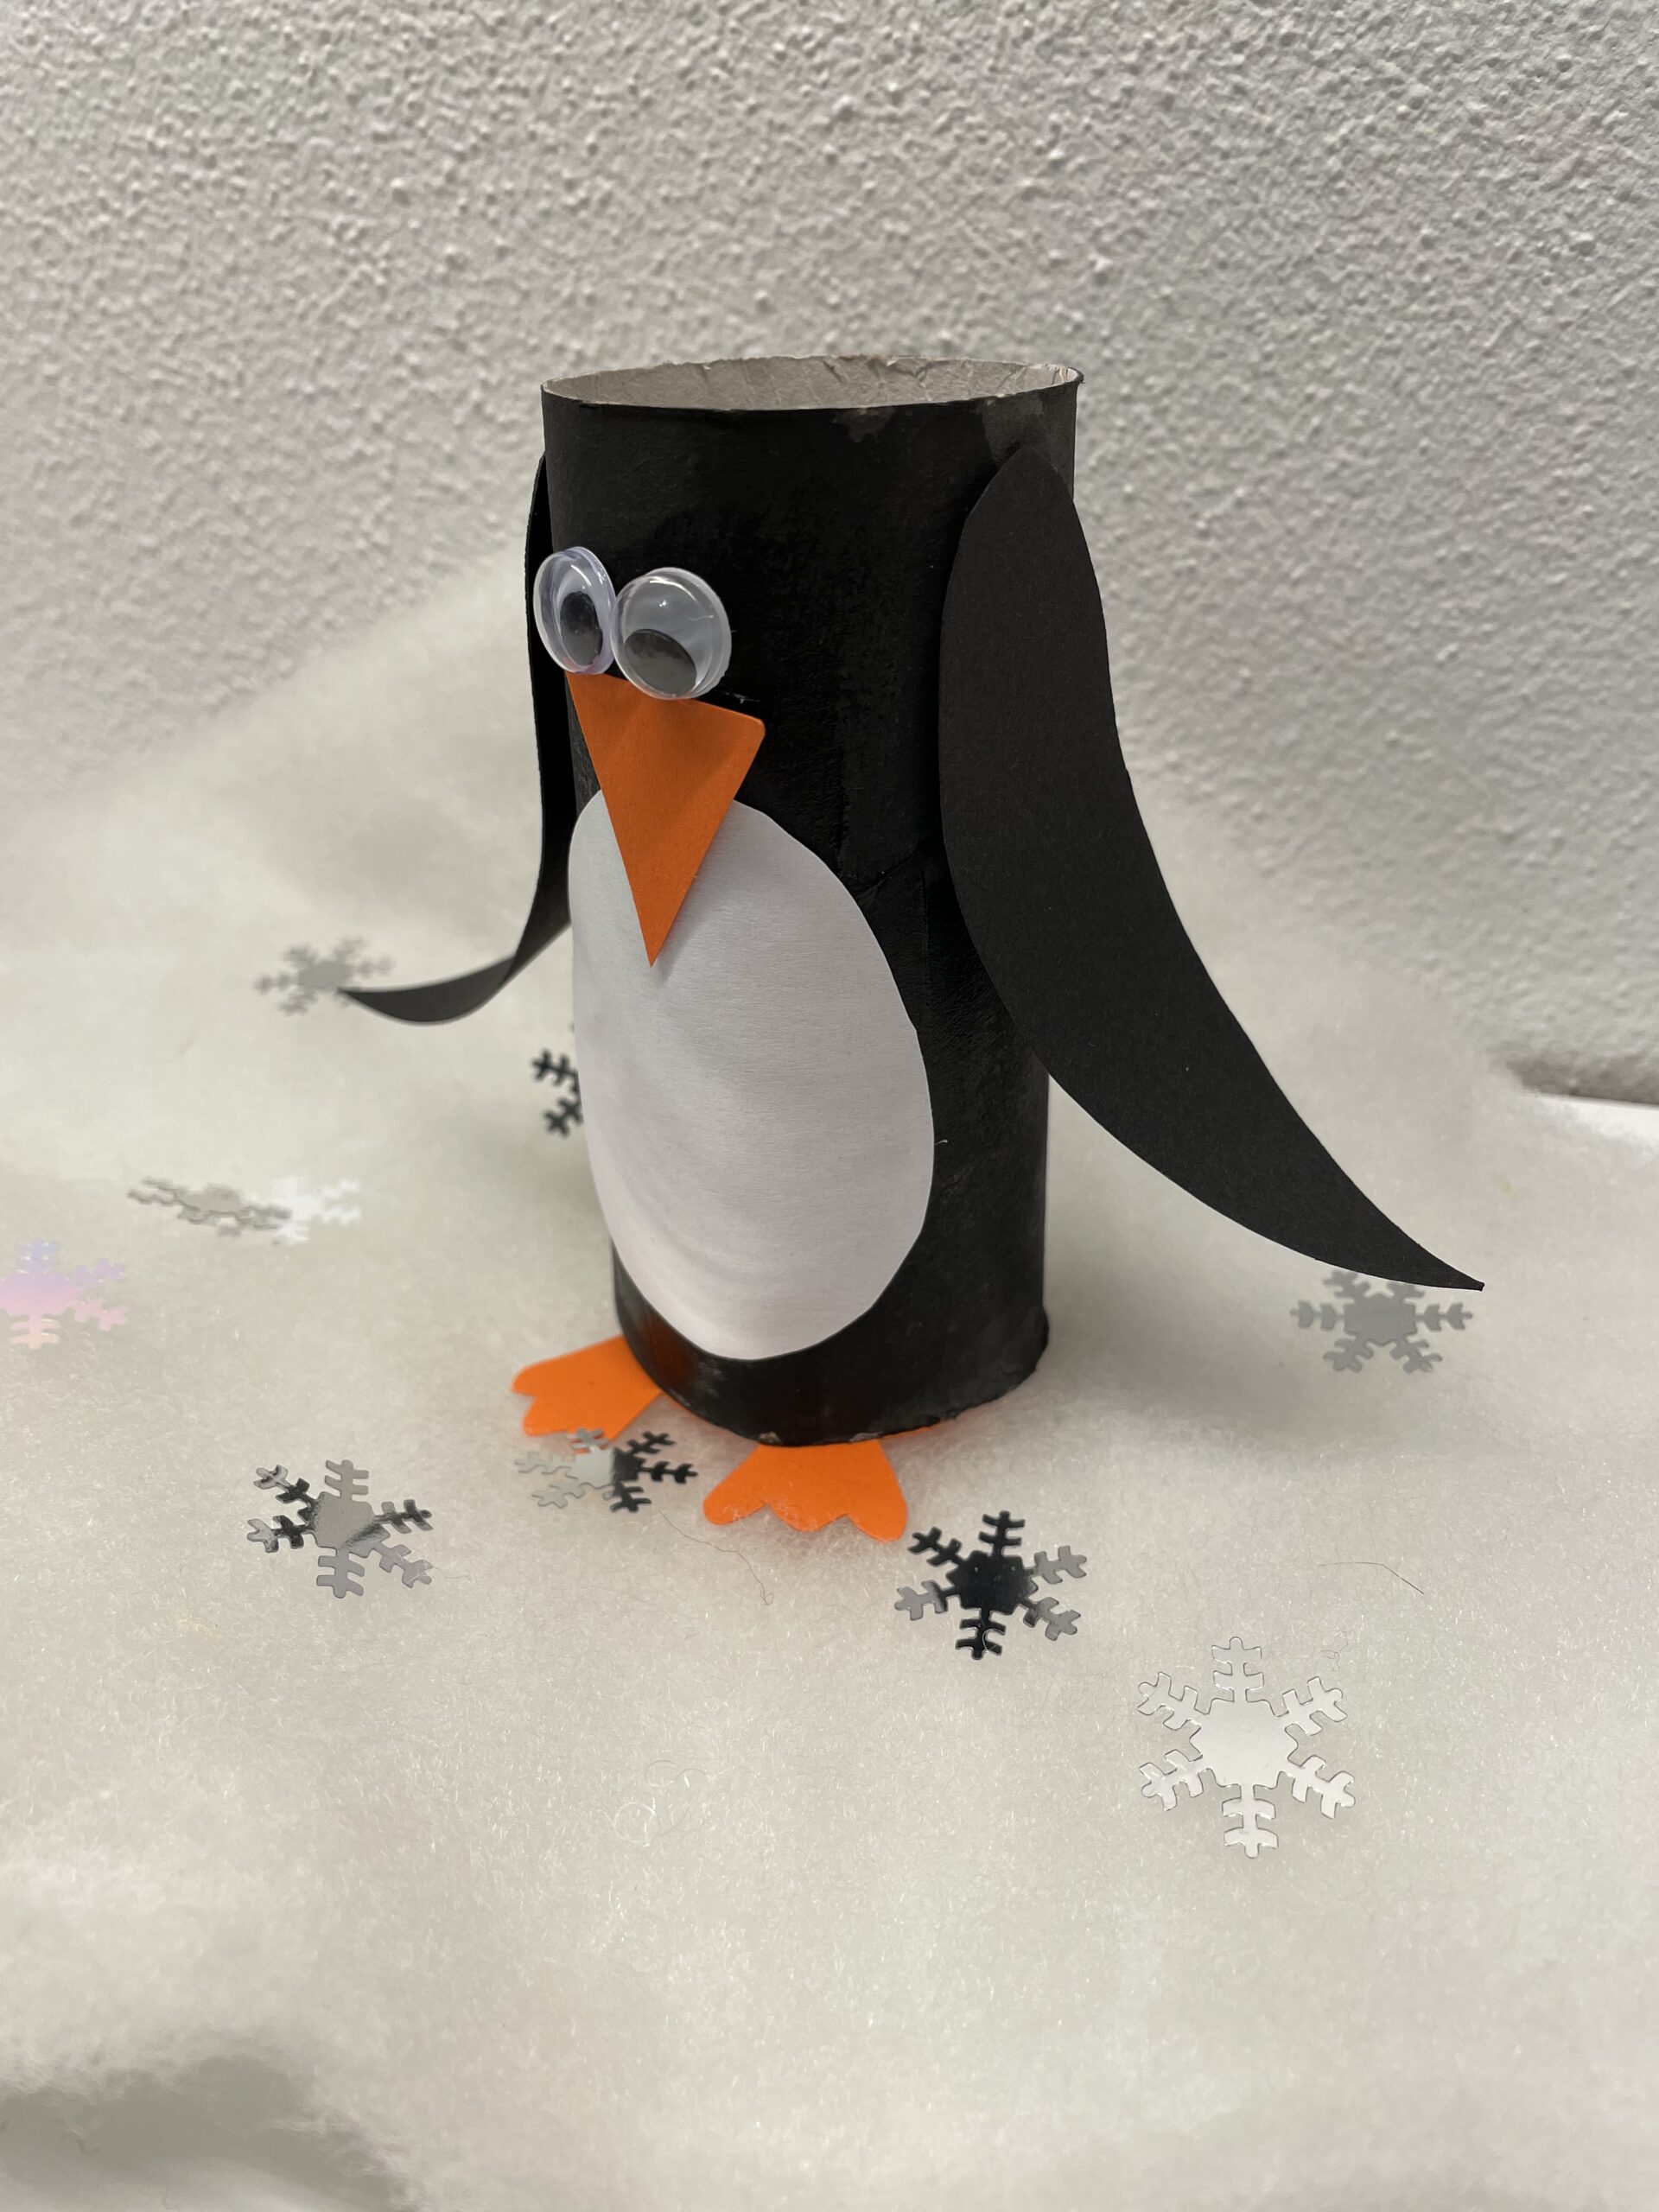 Bild zum Schritt 15 für das Bastel- und DIY-Abenteuer für Kinder: 'Fertig ist der Pinguin.'